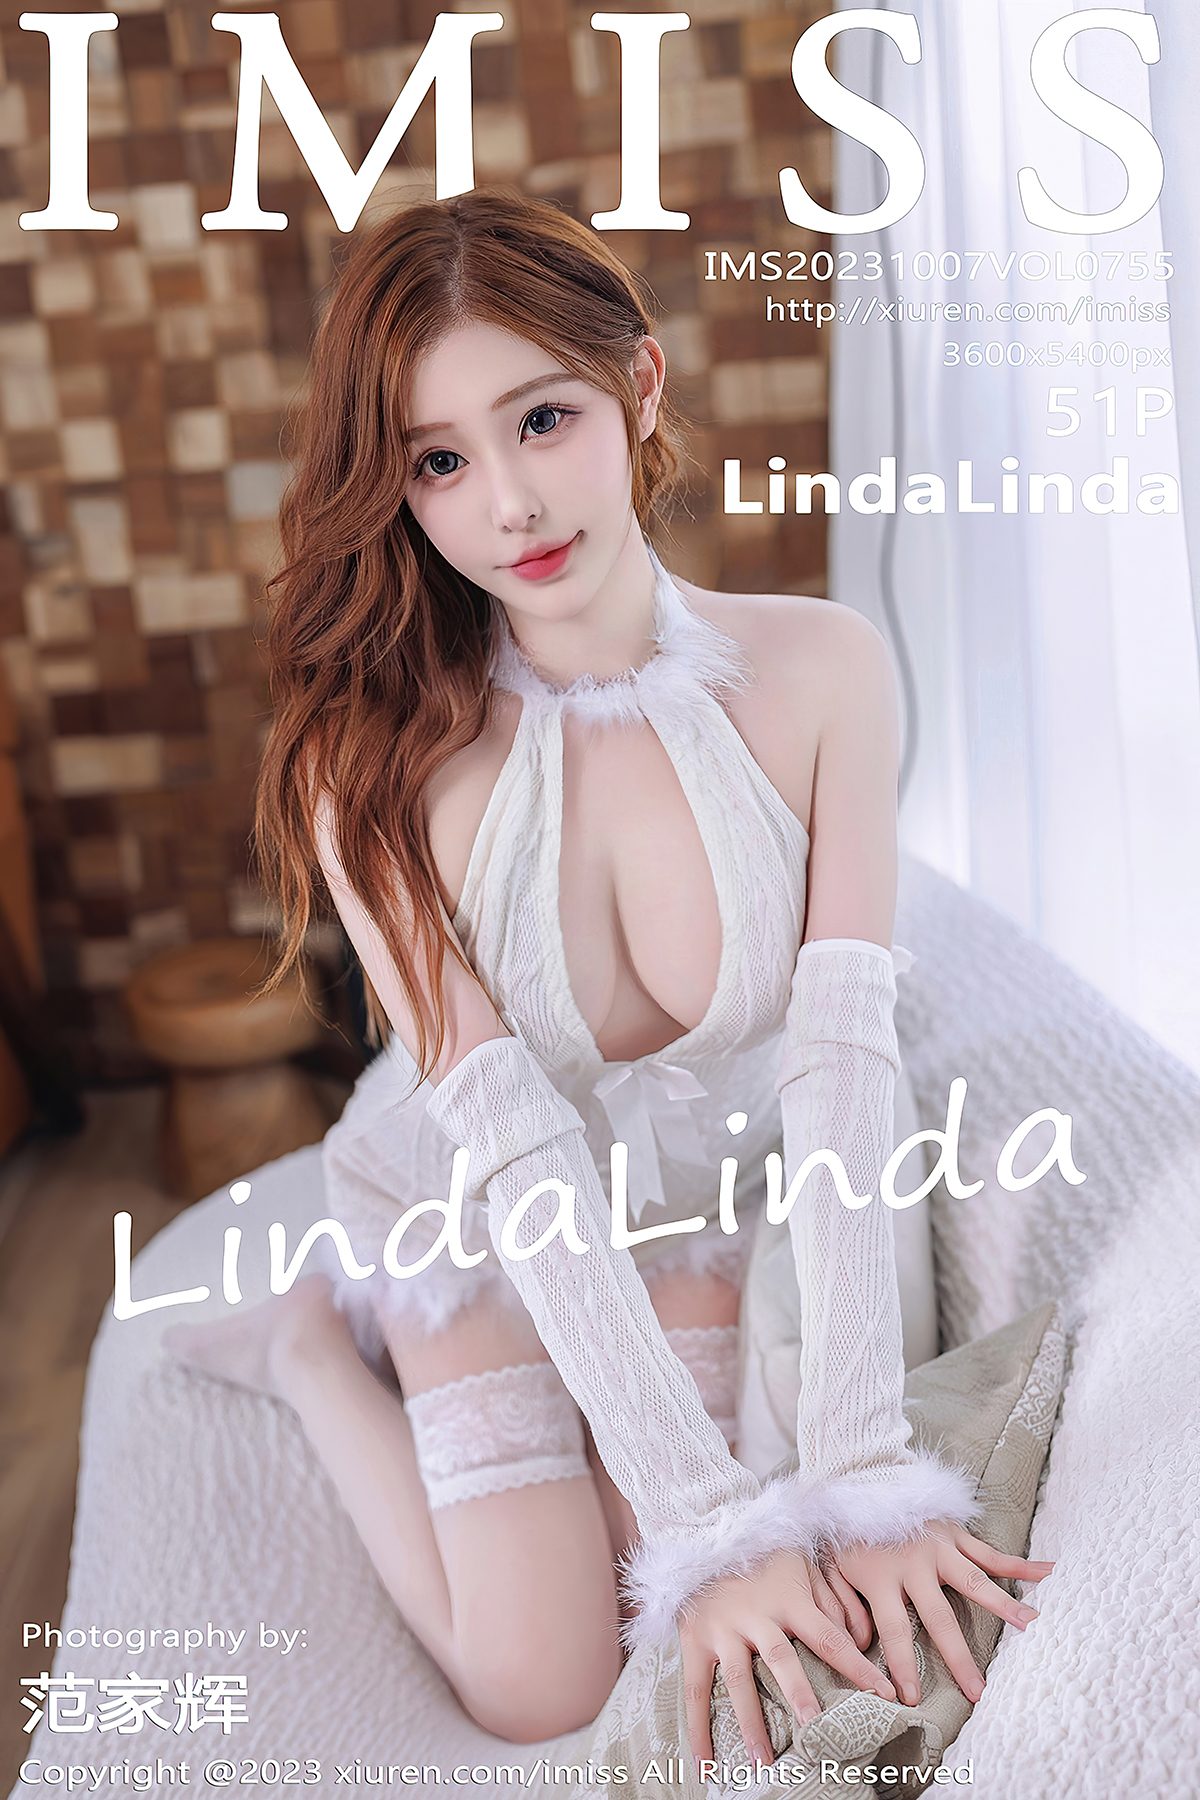 IMiss爱蜜社 Vol.755 Linda Linda